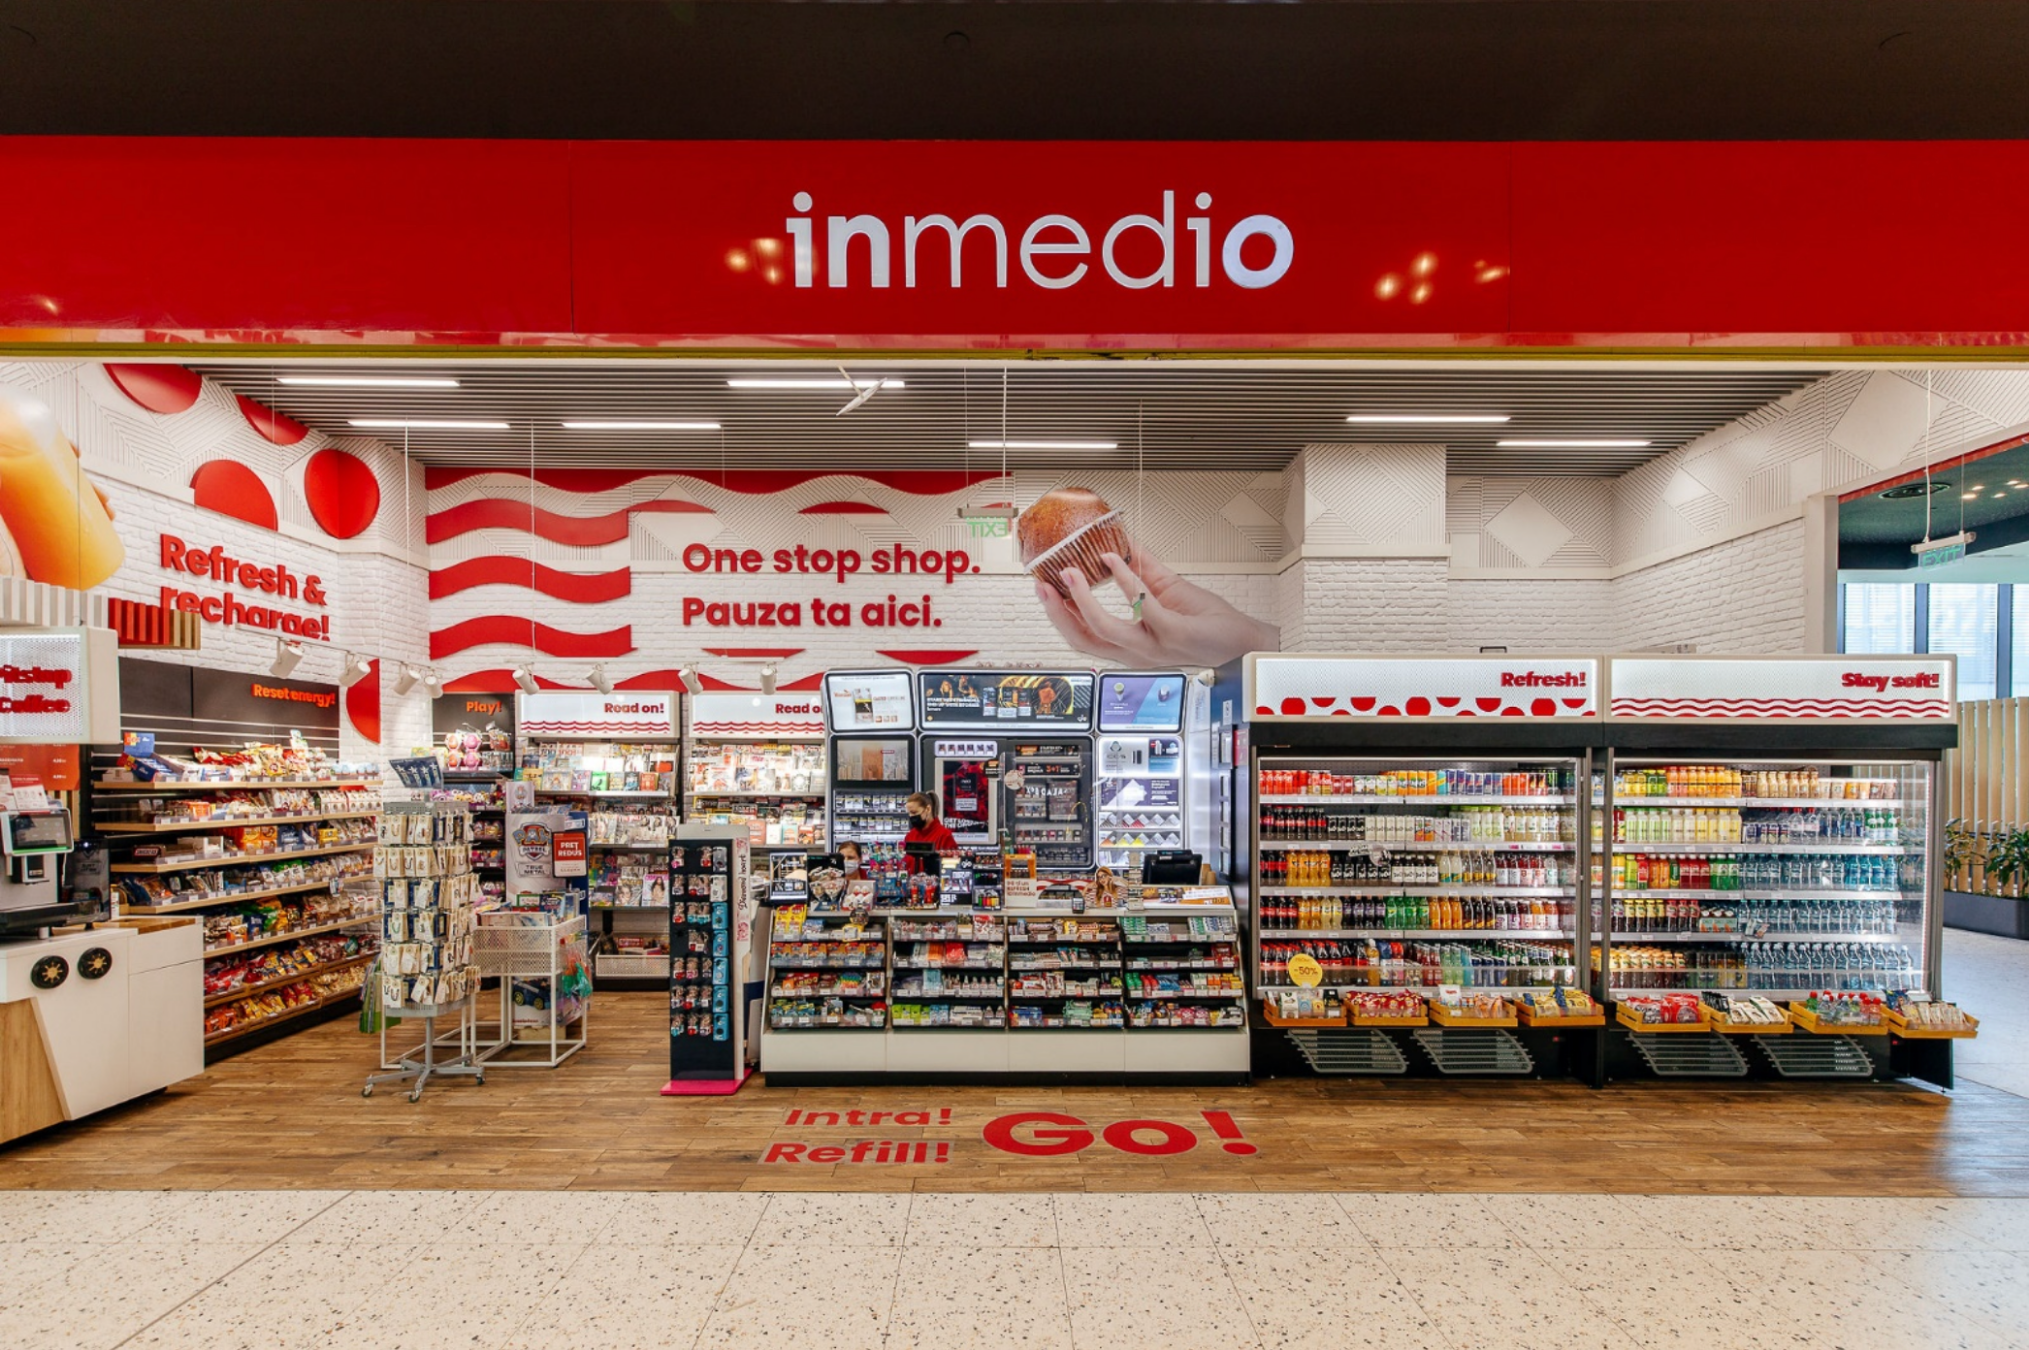 Lagardère Travel Retail anunță dezvoltarea conceptului Inmedio sub o nouă poziționare